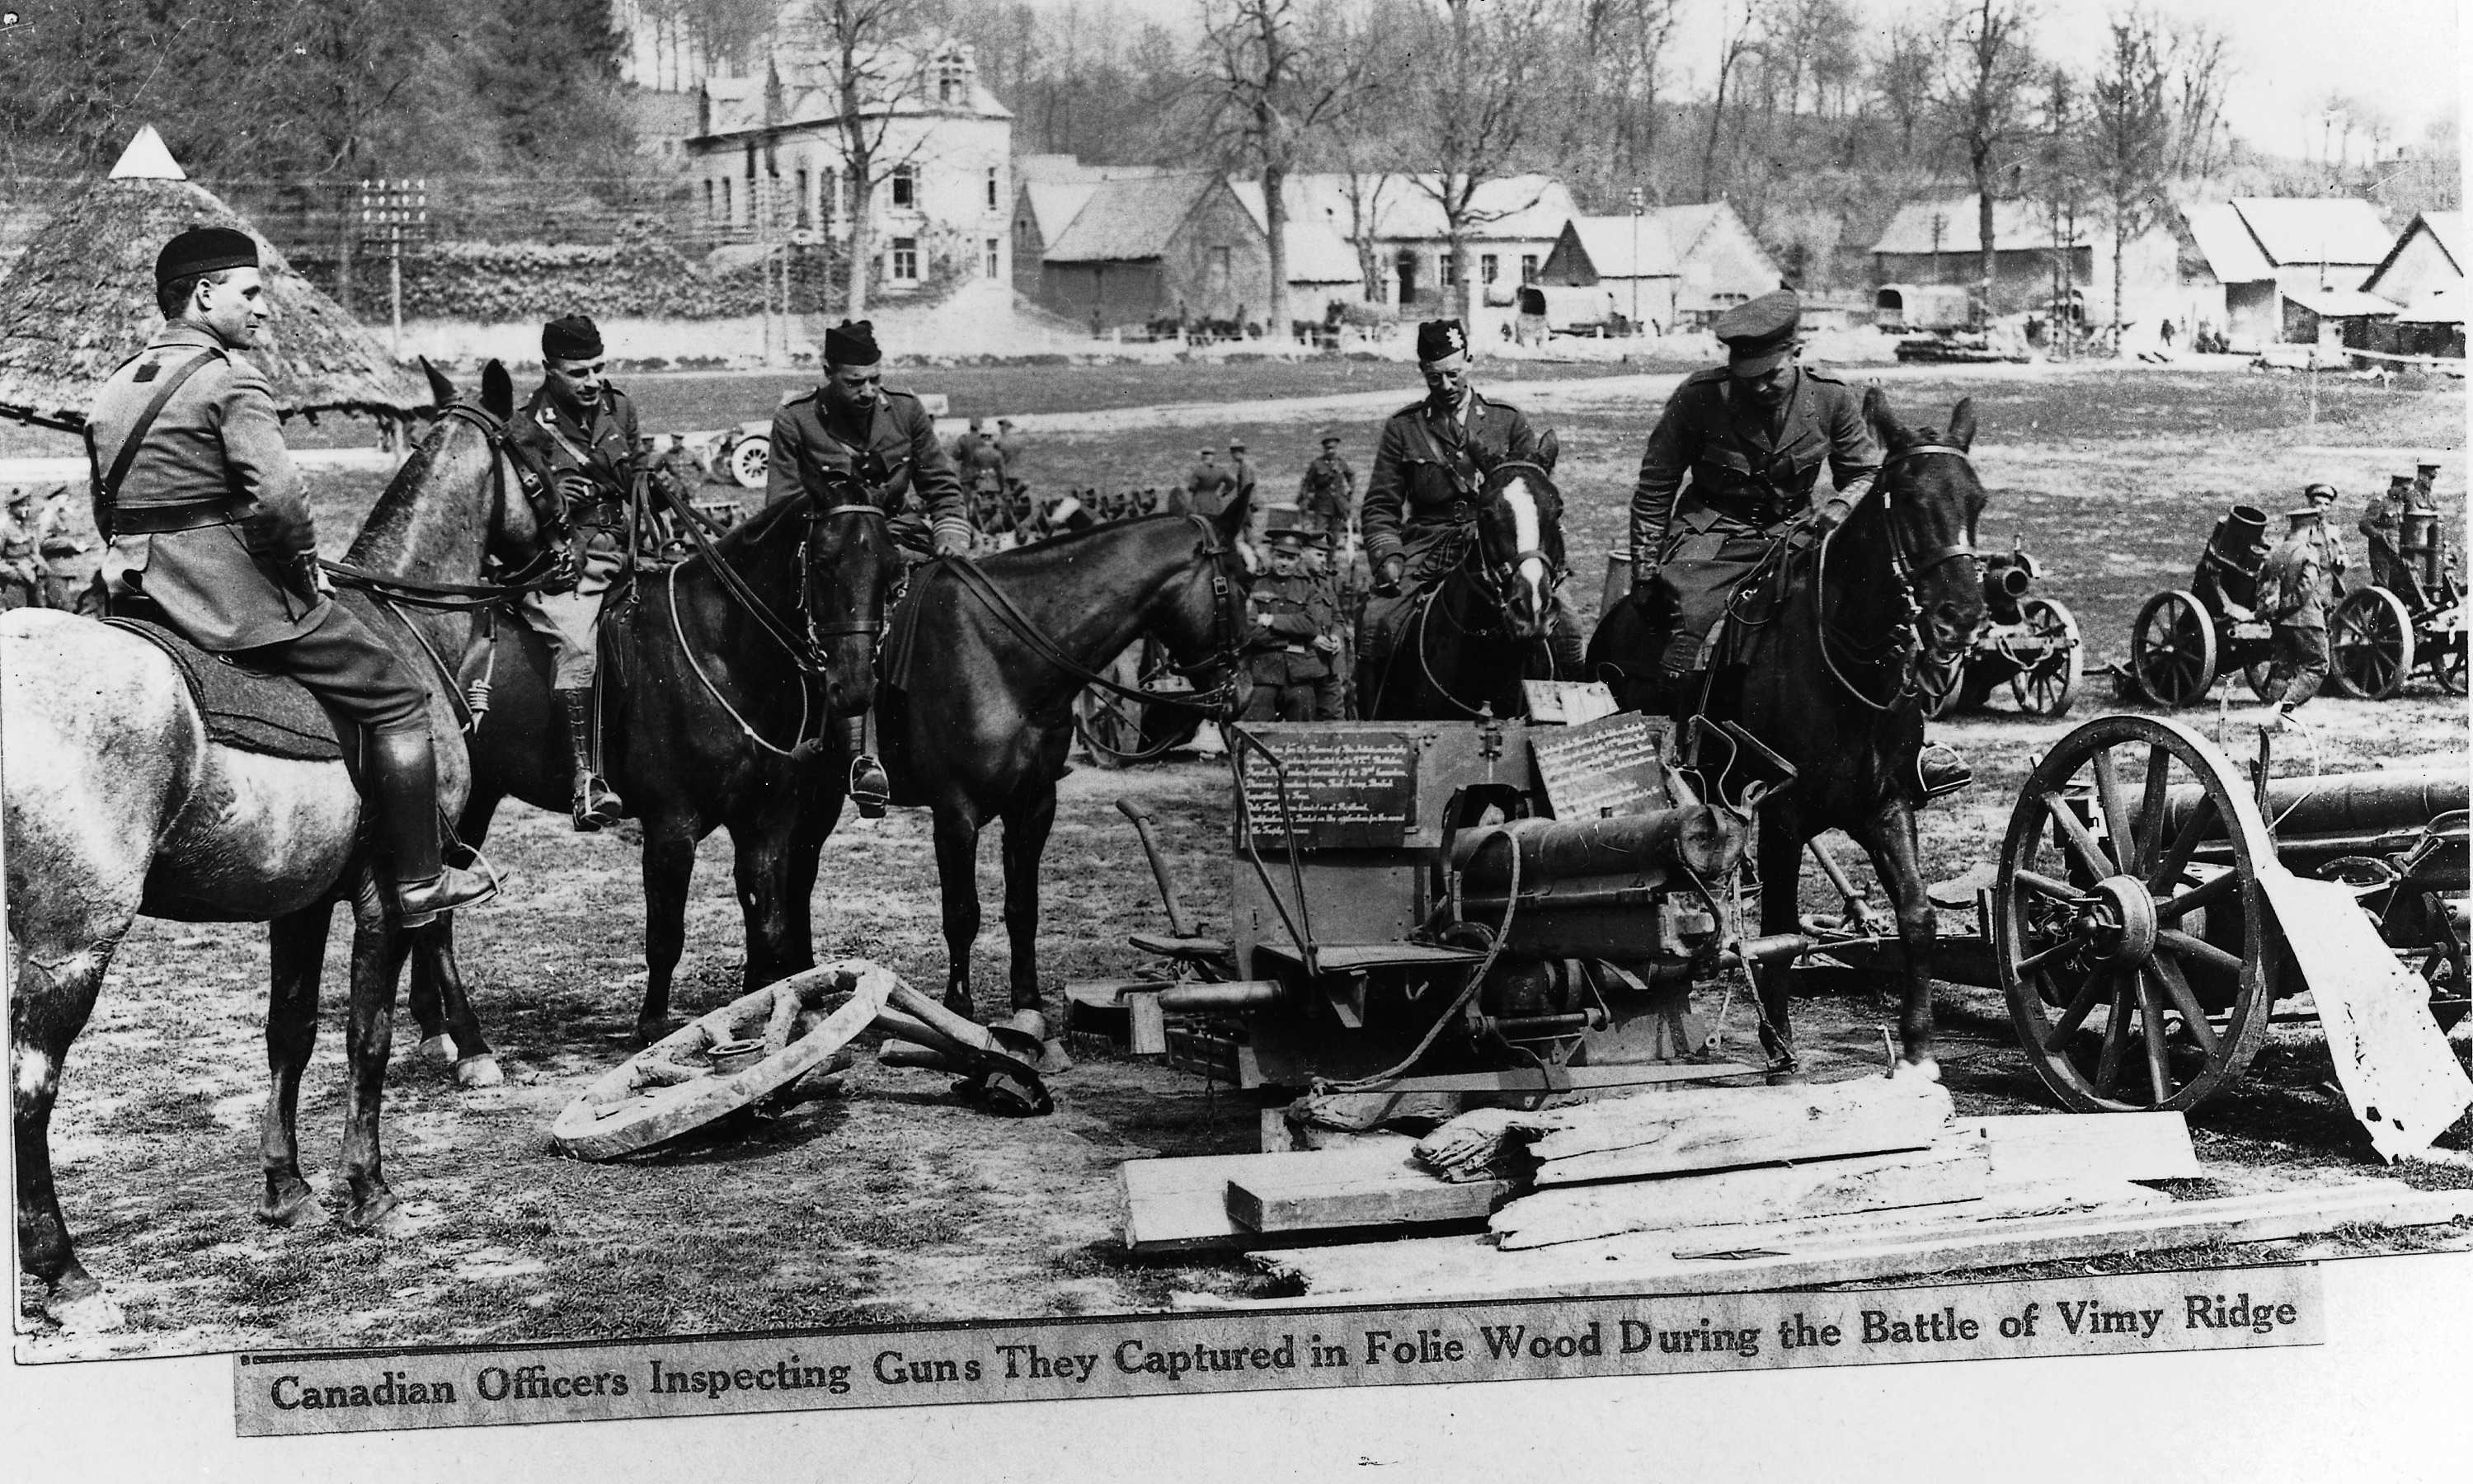 Photographie en noir et blanc – Du haut de leurs chevaux, des hommes en uniforme militaire regardent une pile de canons montés sur roues pour en faciliter le déplacement. De gros morceaux de bois gisent sur le sol. Un village est visible au loin.